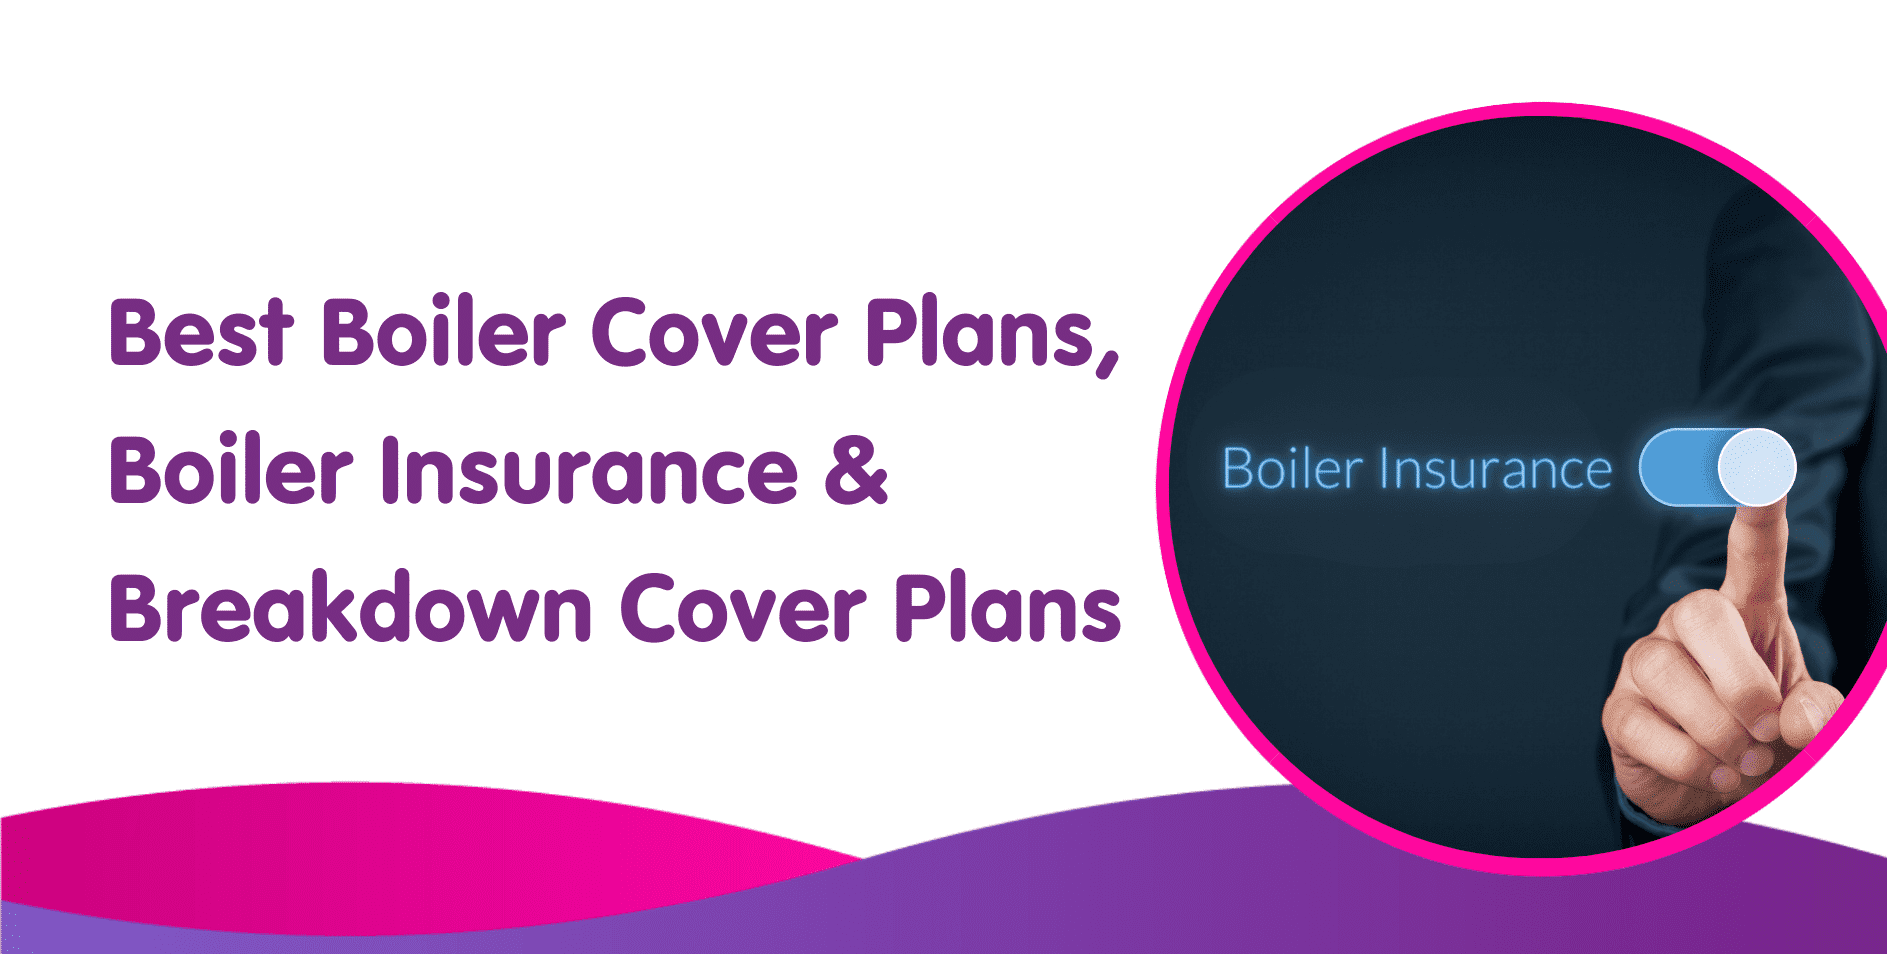 Best Boiler Cover Plans, Boiler Insurance & Breakdown Cover Plans